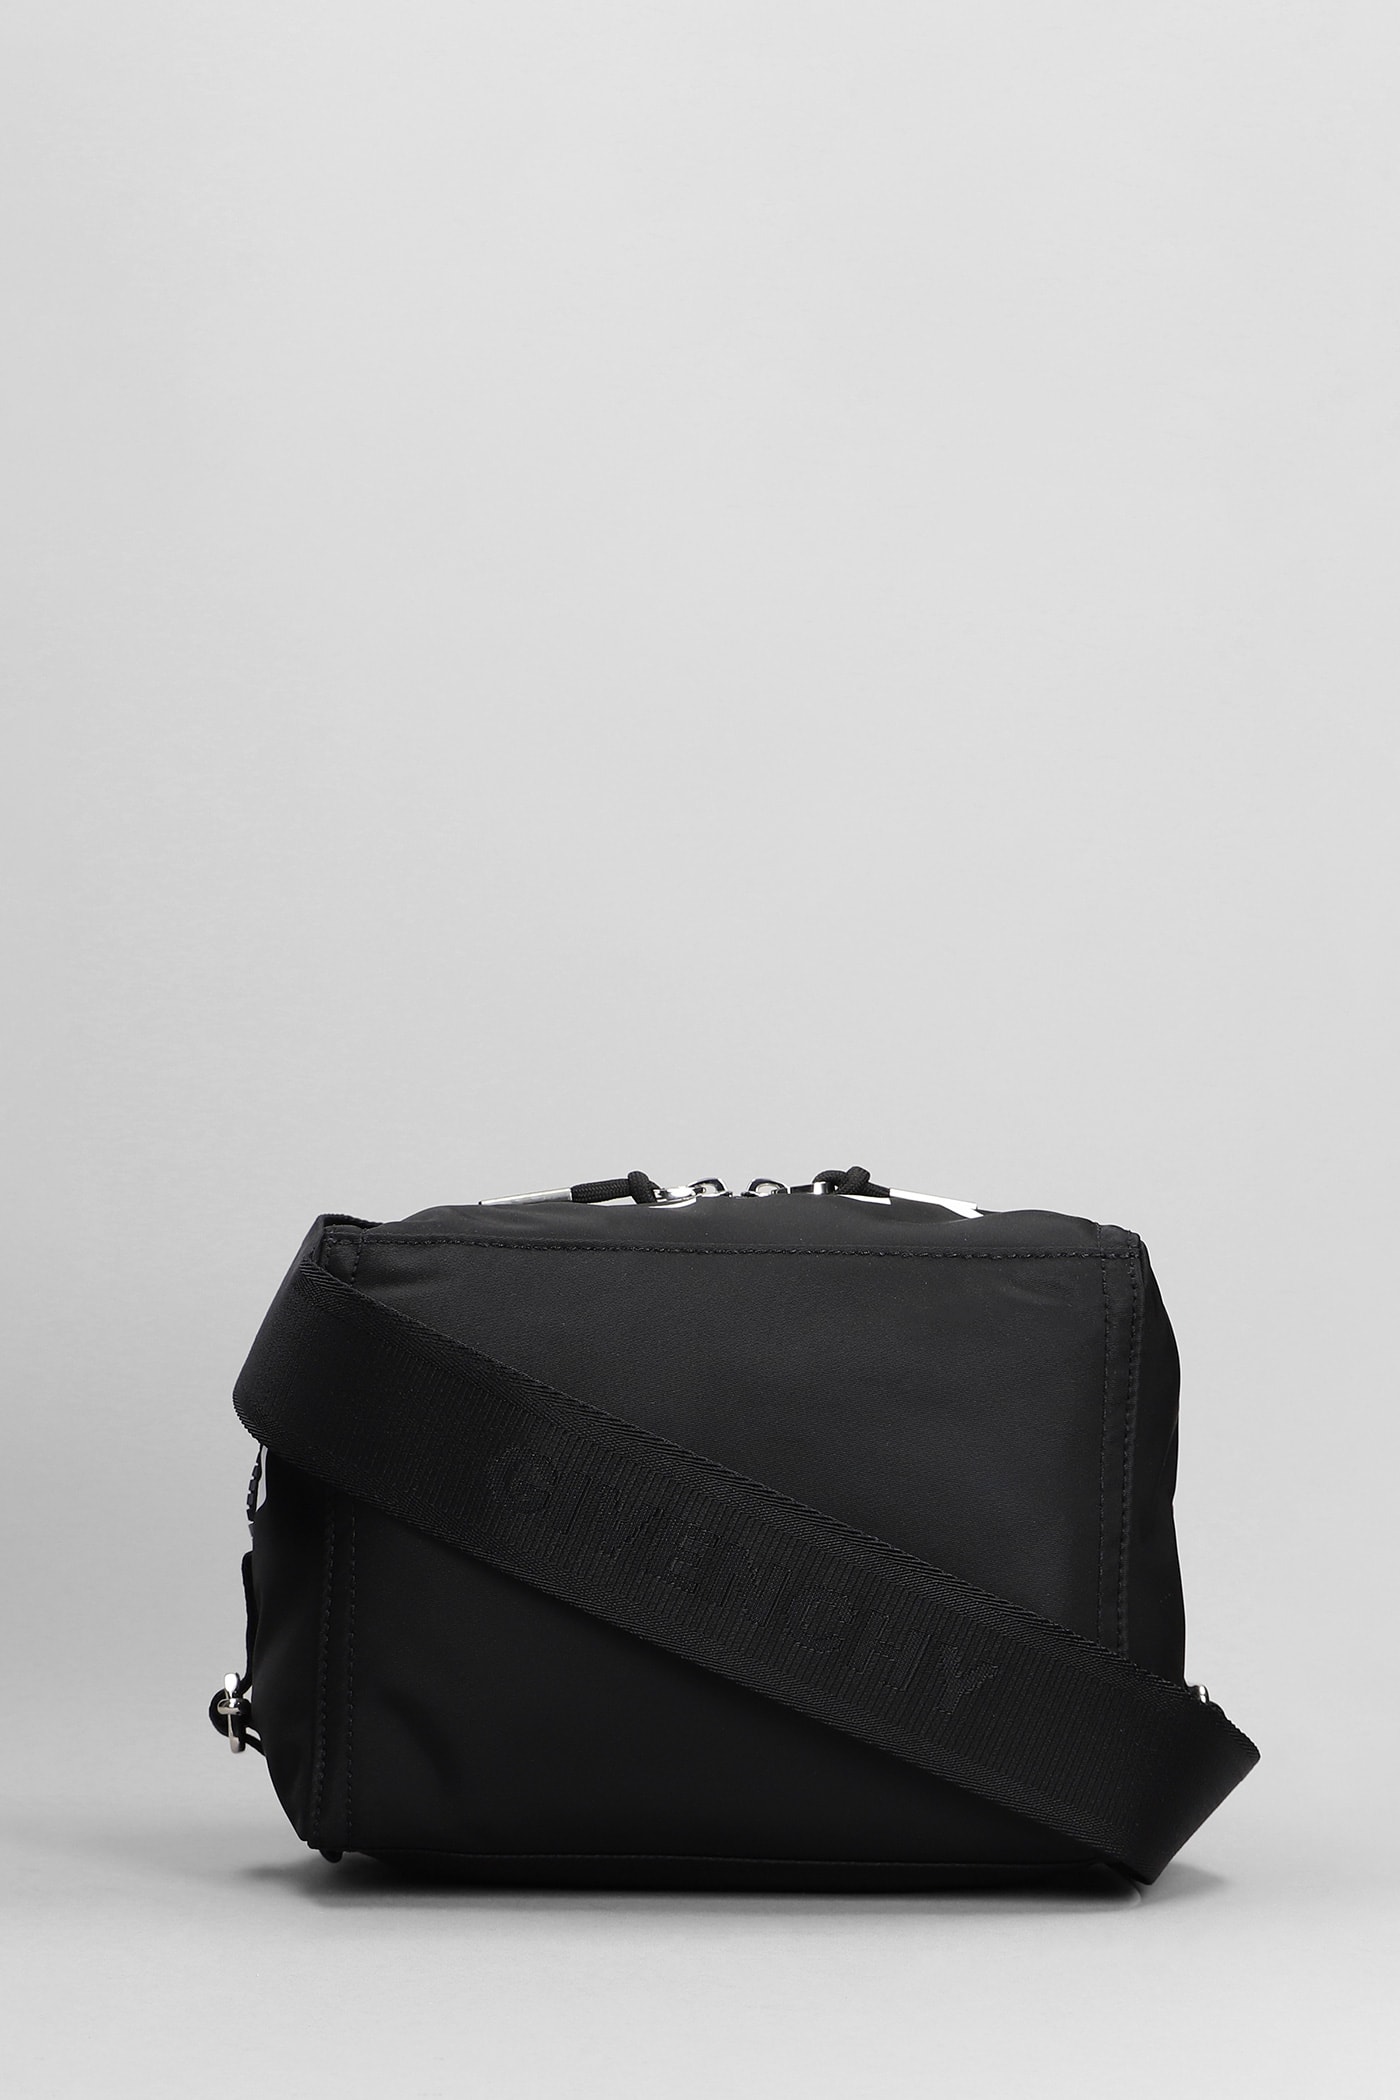 Givenchy Pandora Small Shoulder Bag In Black Polyamide